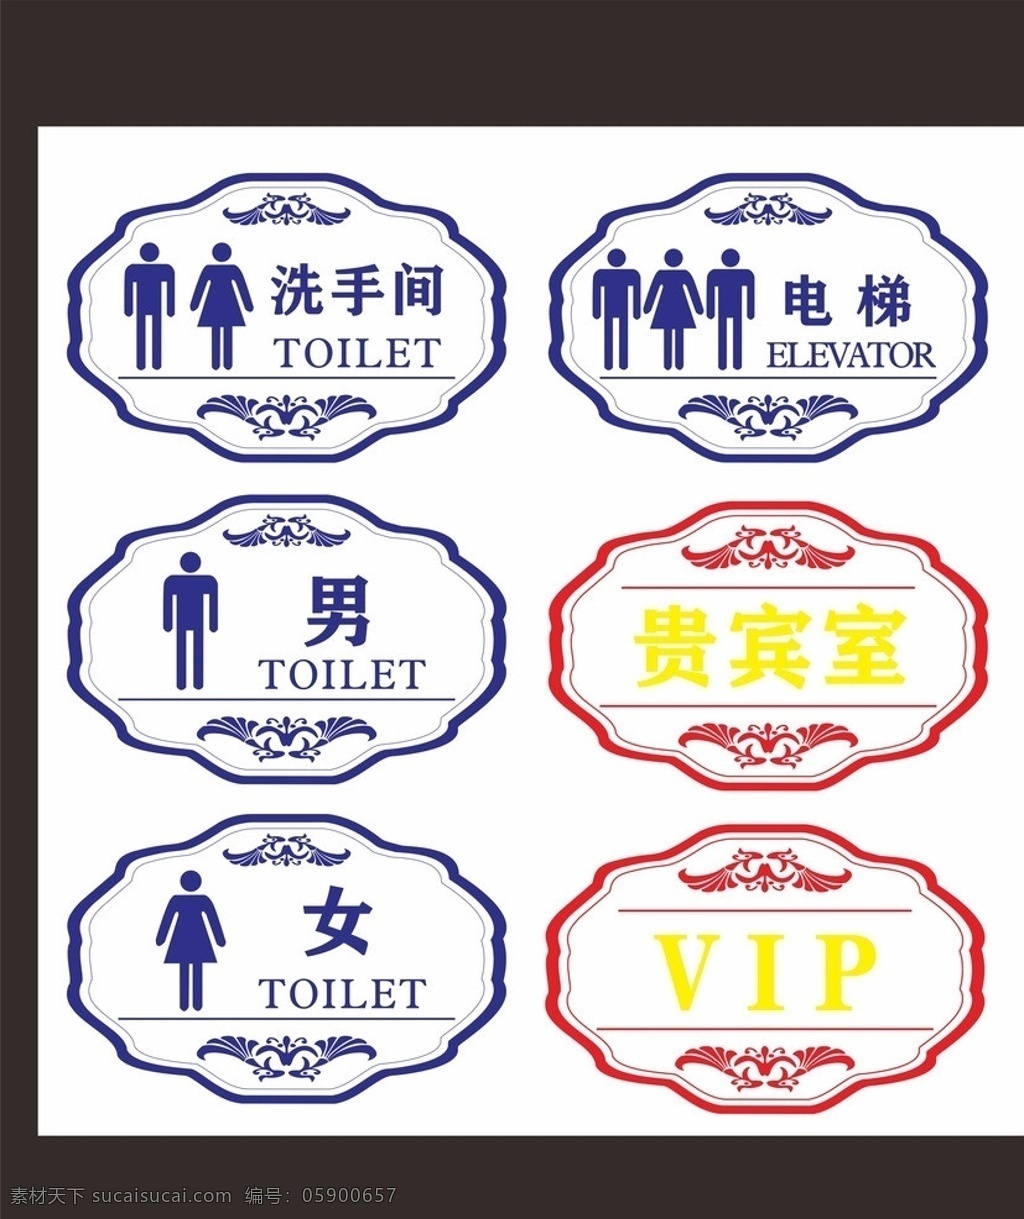 洗手间 电梯 贵宾室 wc 电梯口 vip客房 标识牌 门牌 标识 矢量